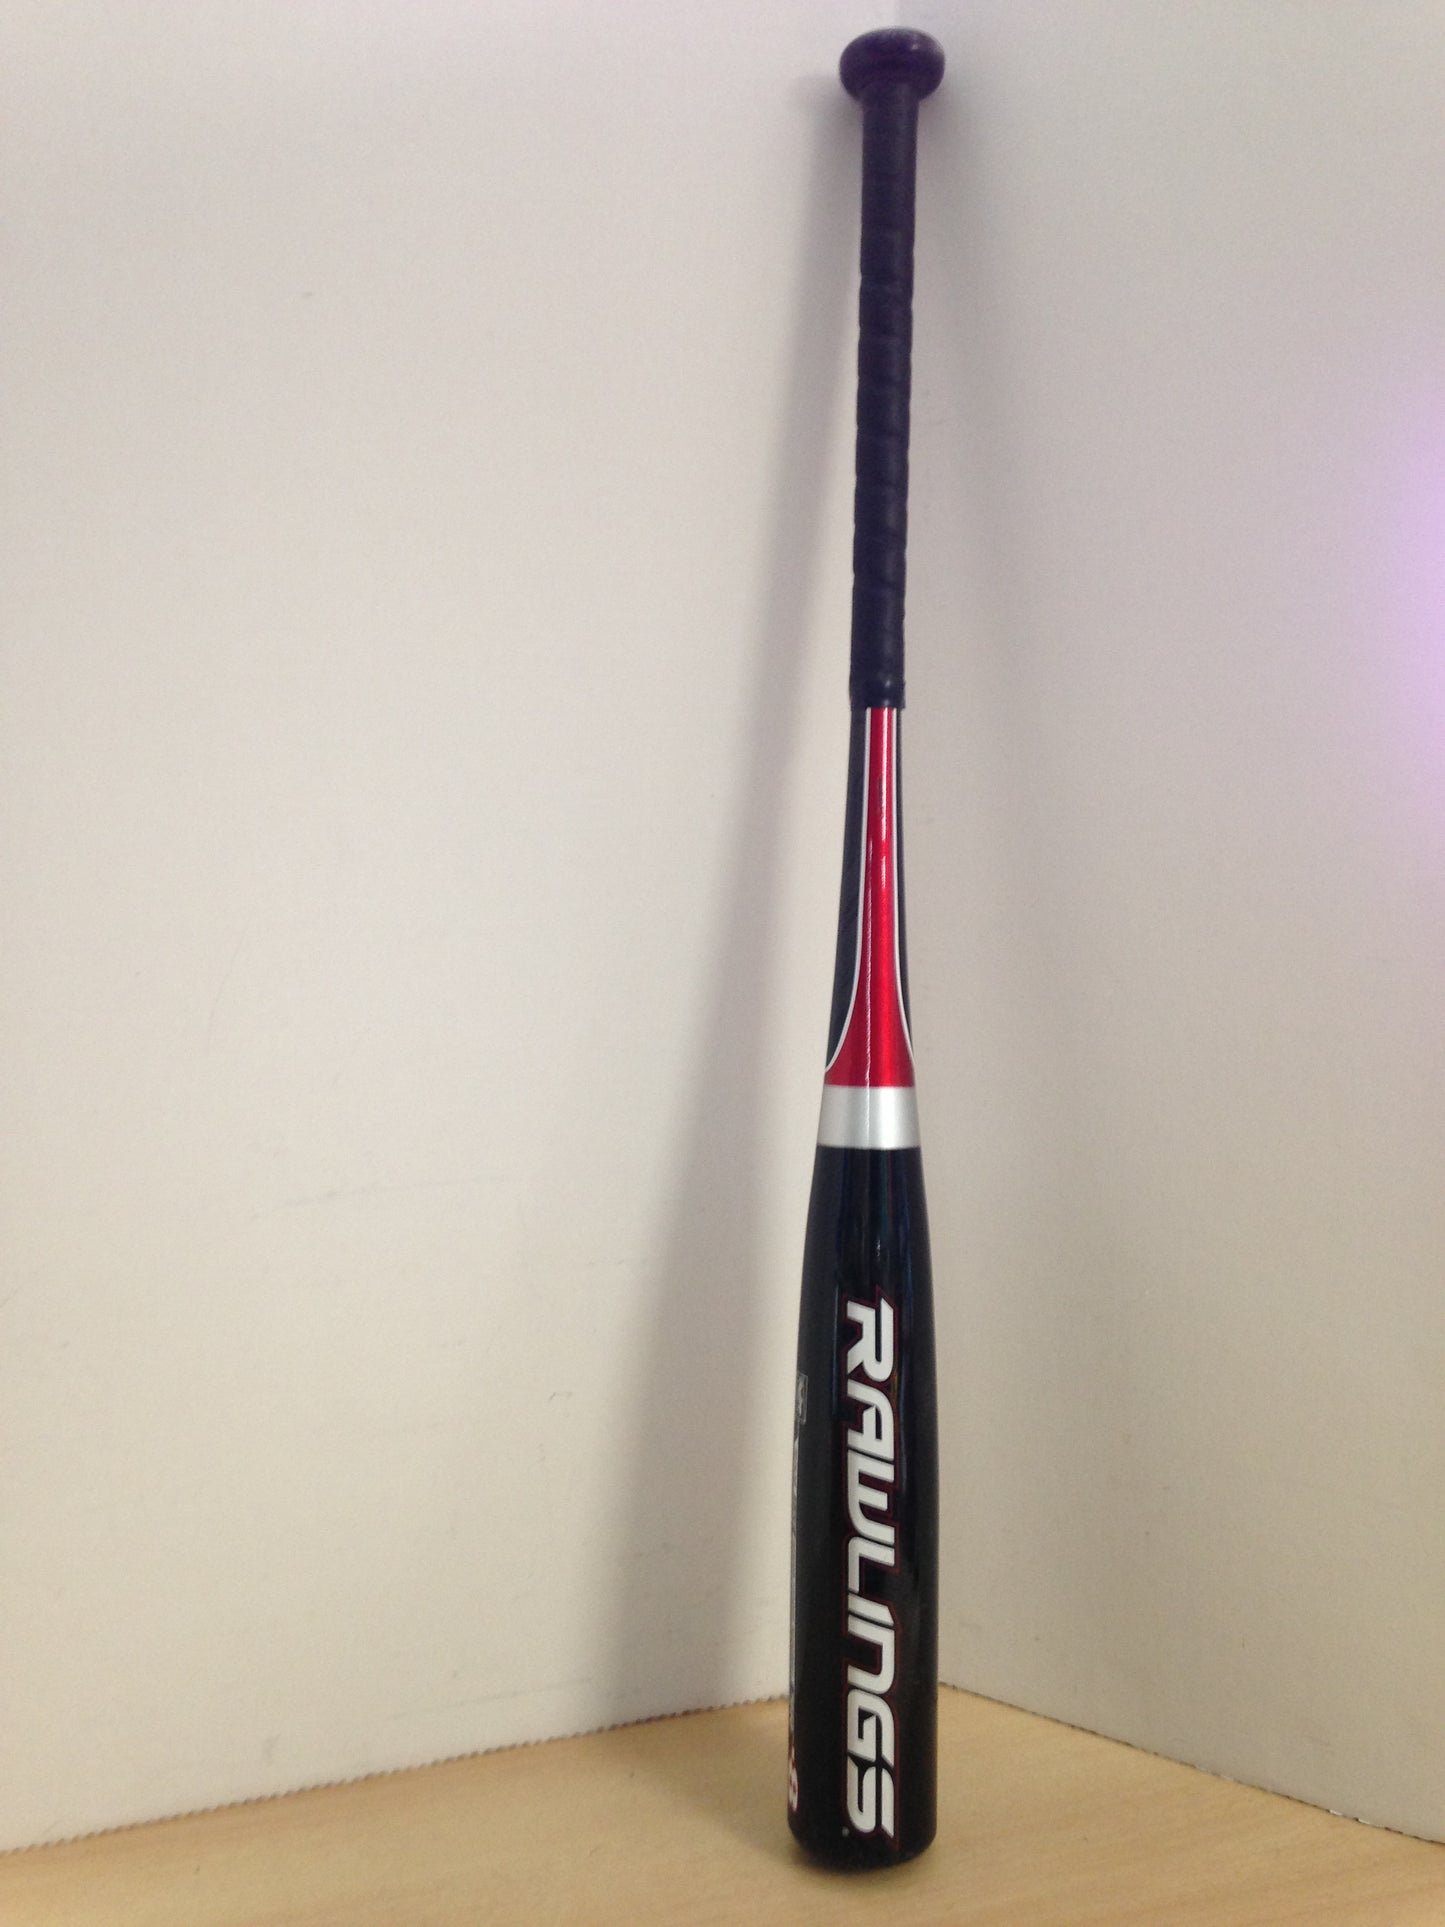 Baseball Bat 32 Inch 24 oz Rawlings Plasma Black Red As New